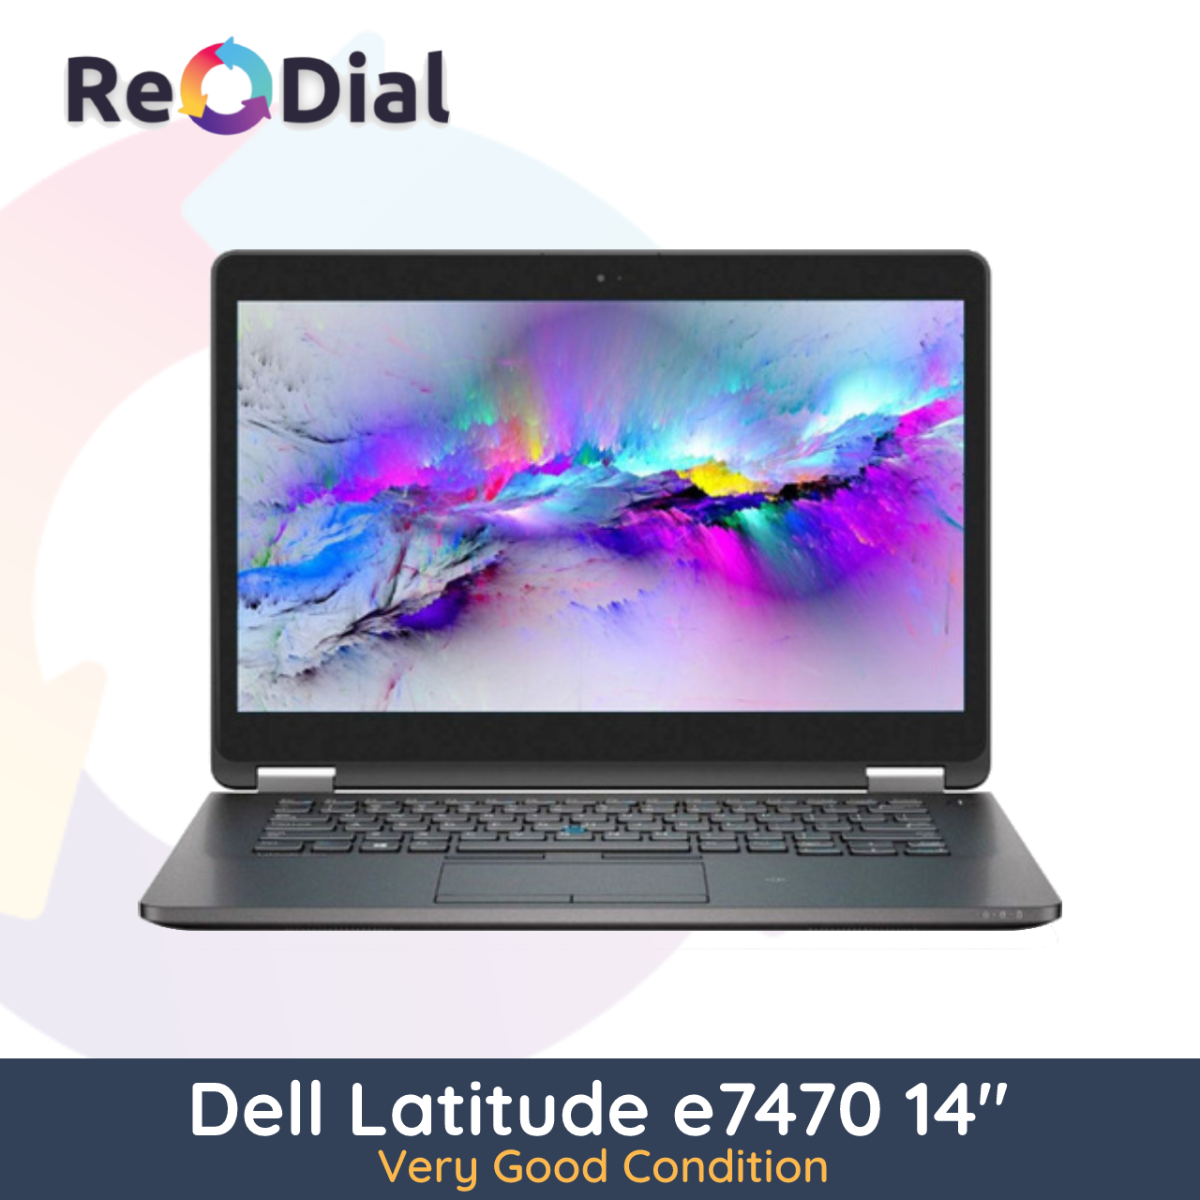 Dell Latitude E7470 14" i7-6600U 512GB/256GB 16GB RAM - Very Good Condition